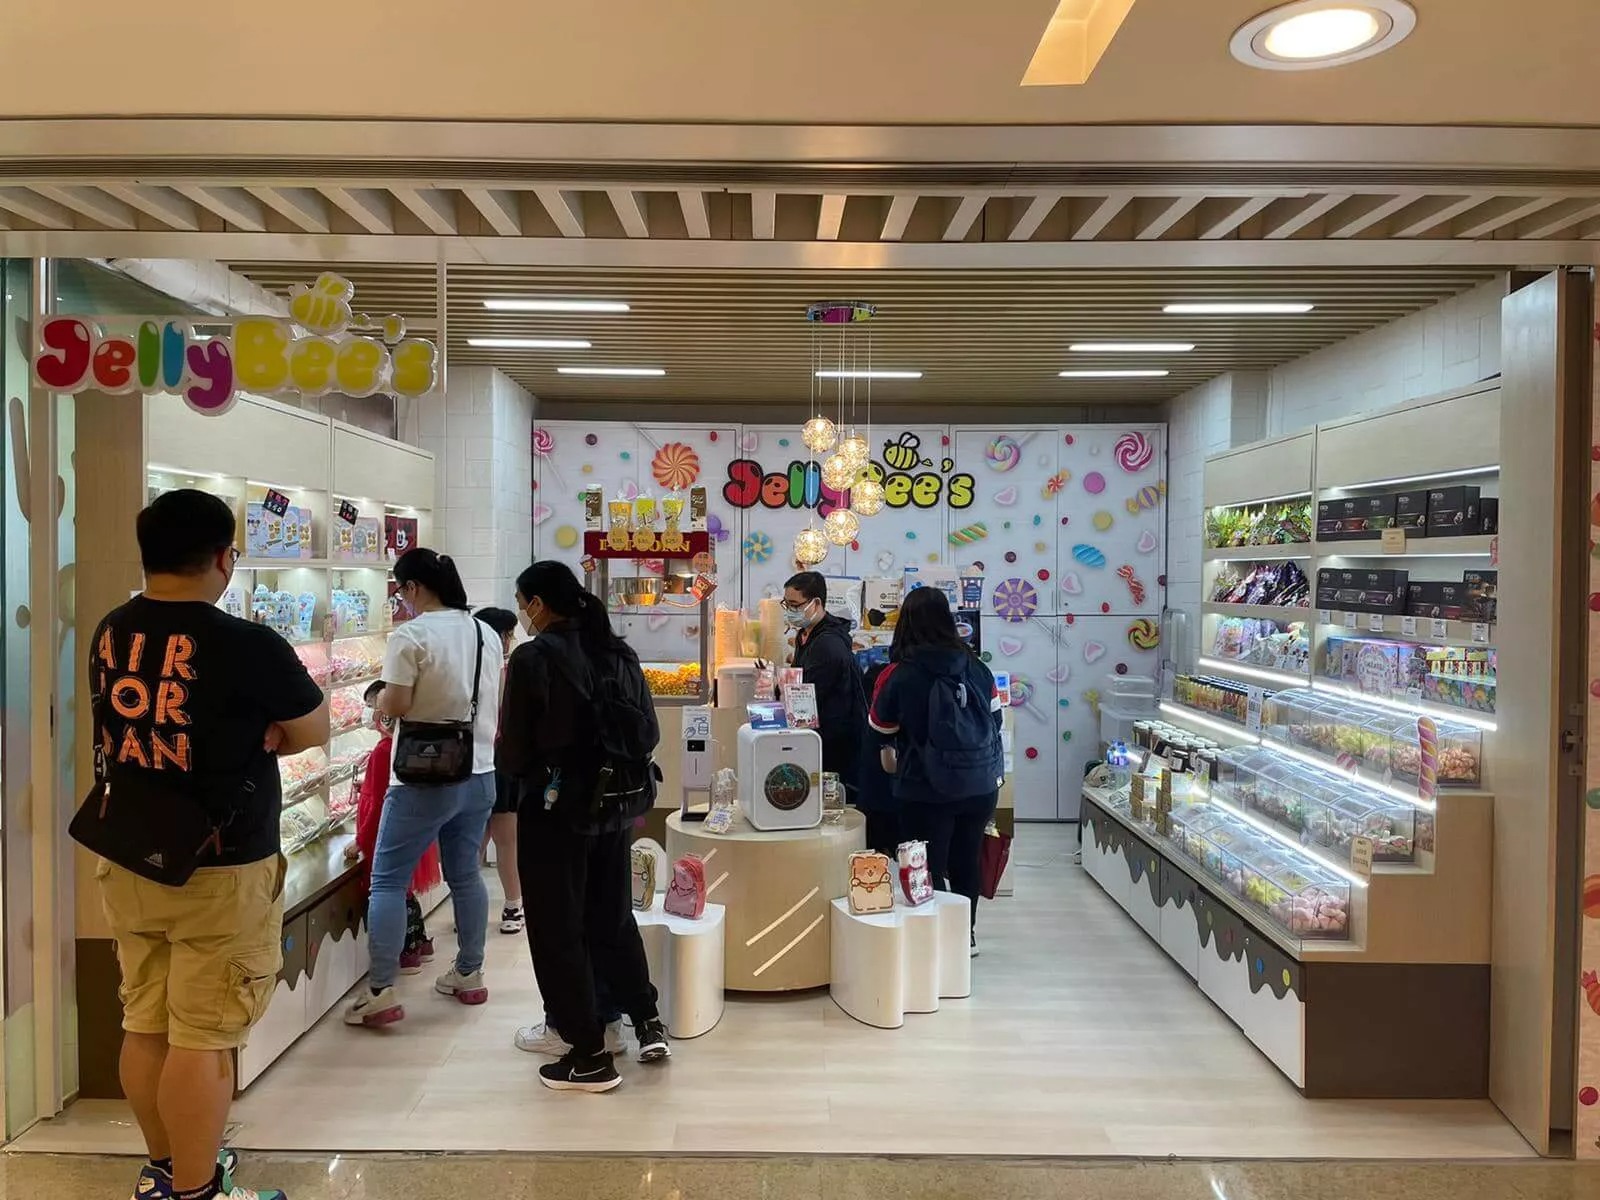 Jellybee's的特許經營香港區加盟店項目2